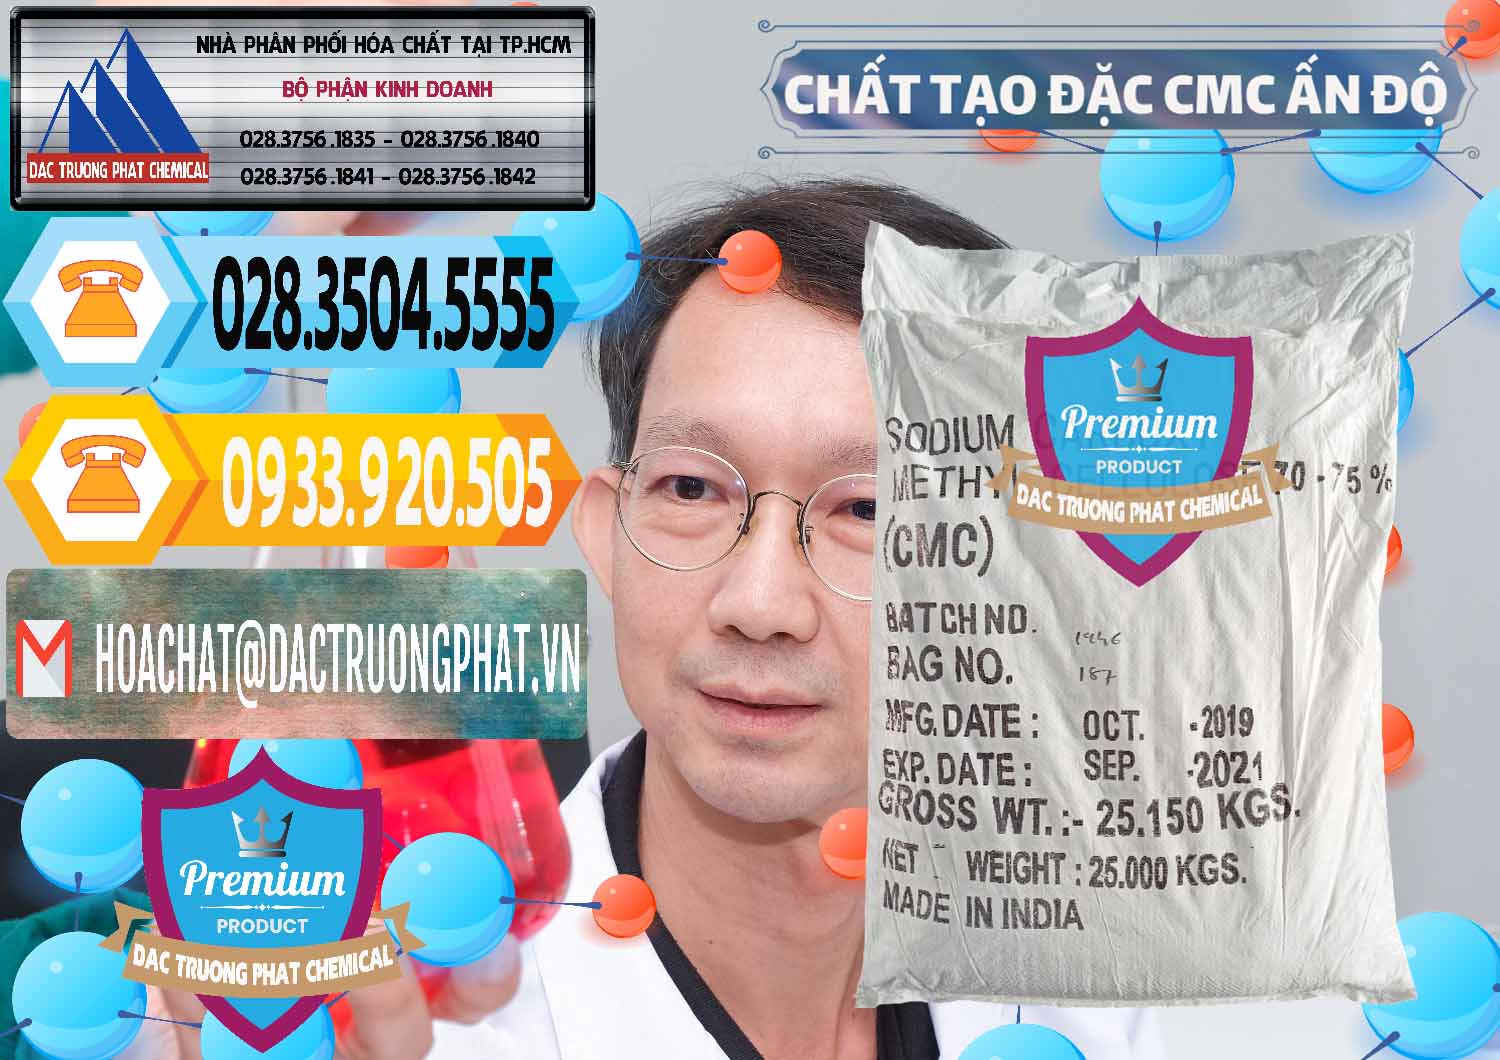 Công ty bán ( cung ứng ) Chất Tạo Đặc CMC - Carboxyl Methyl Cellulose Ấn Độ India - 0044 - Nơi phân phối - cung cấp hóa chất tại TP.HCM - hoachattayrua.net